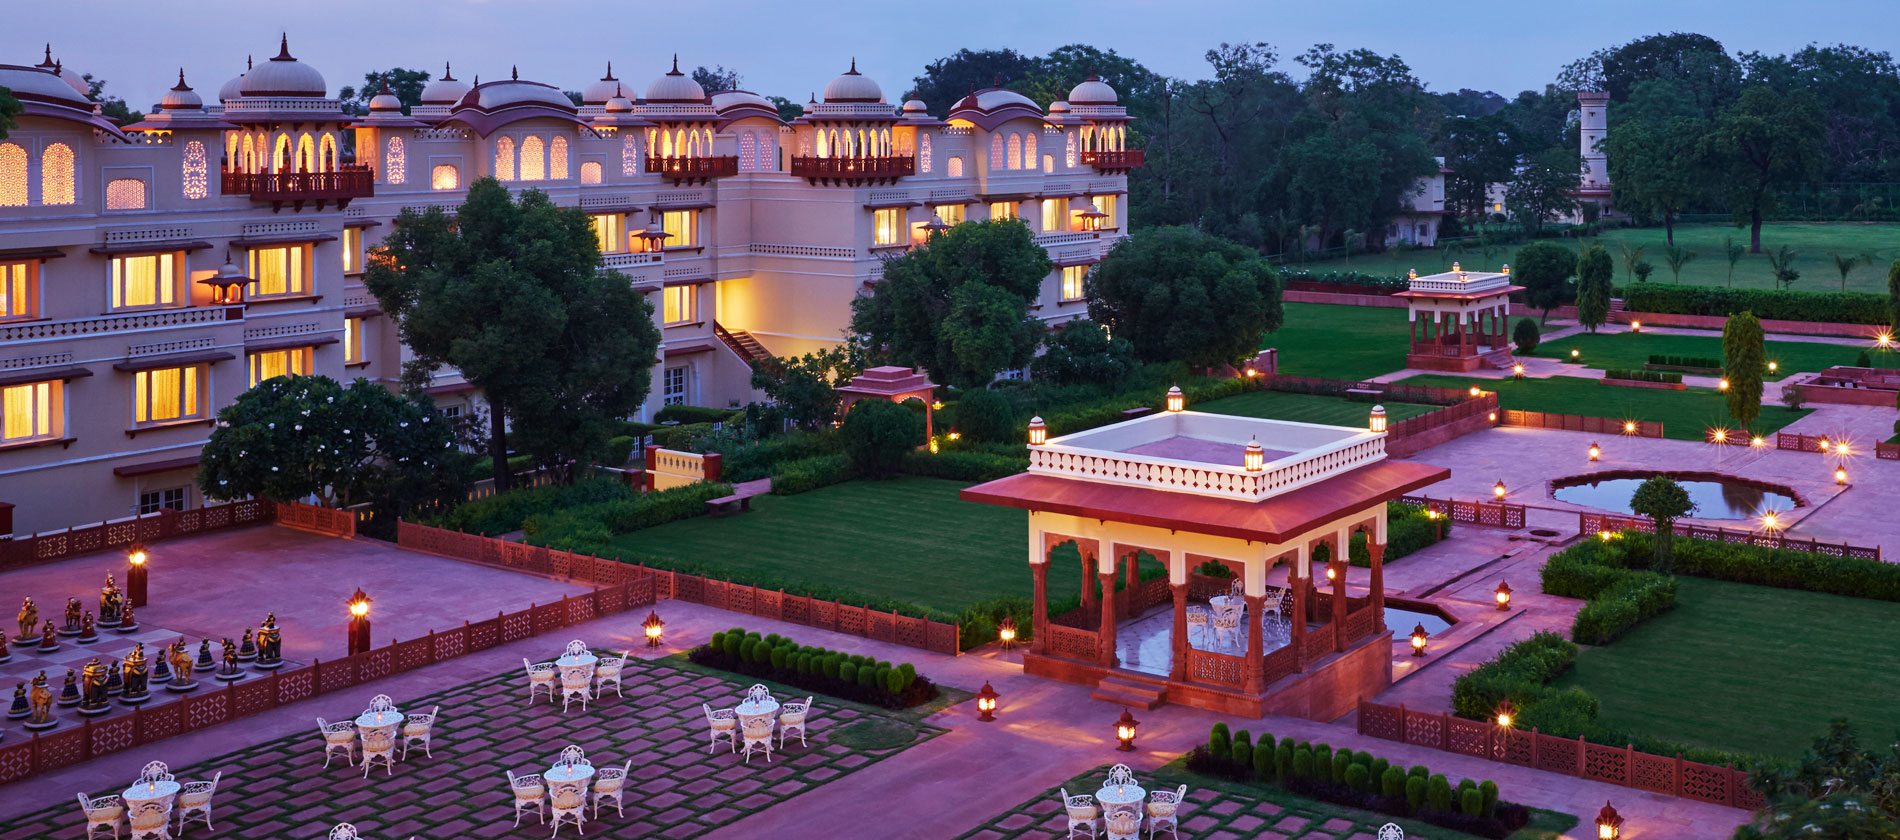 Jai Mahal Palace Hotel in North India | ENCHANTING TRAVELS